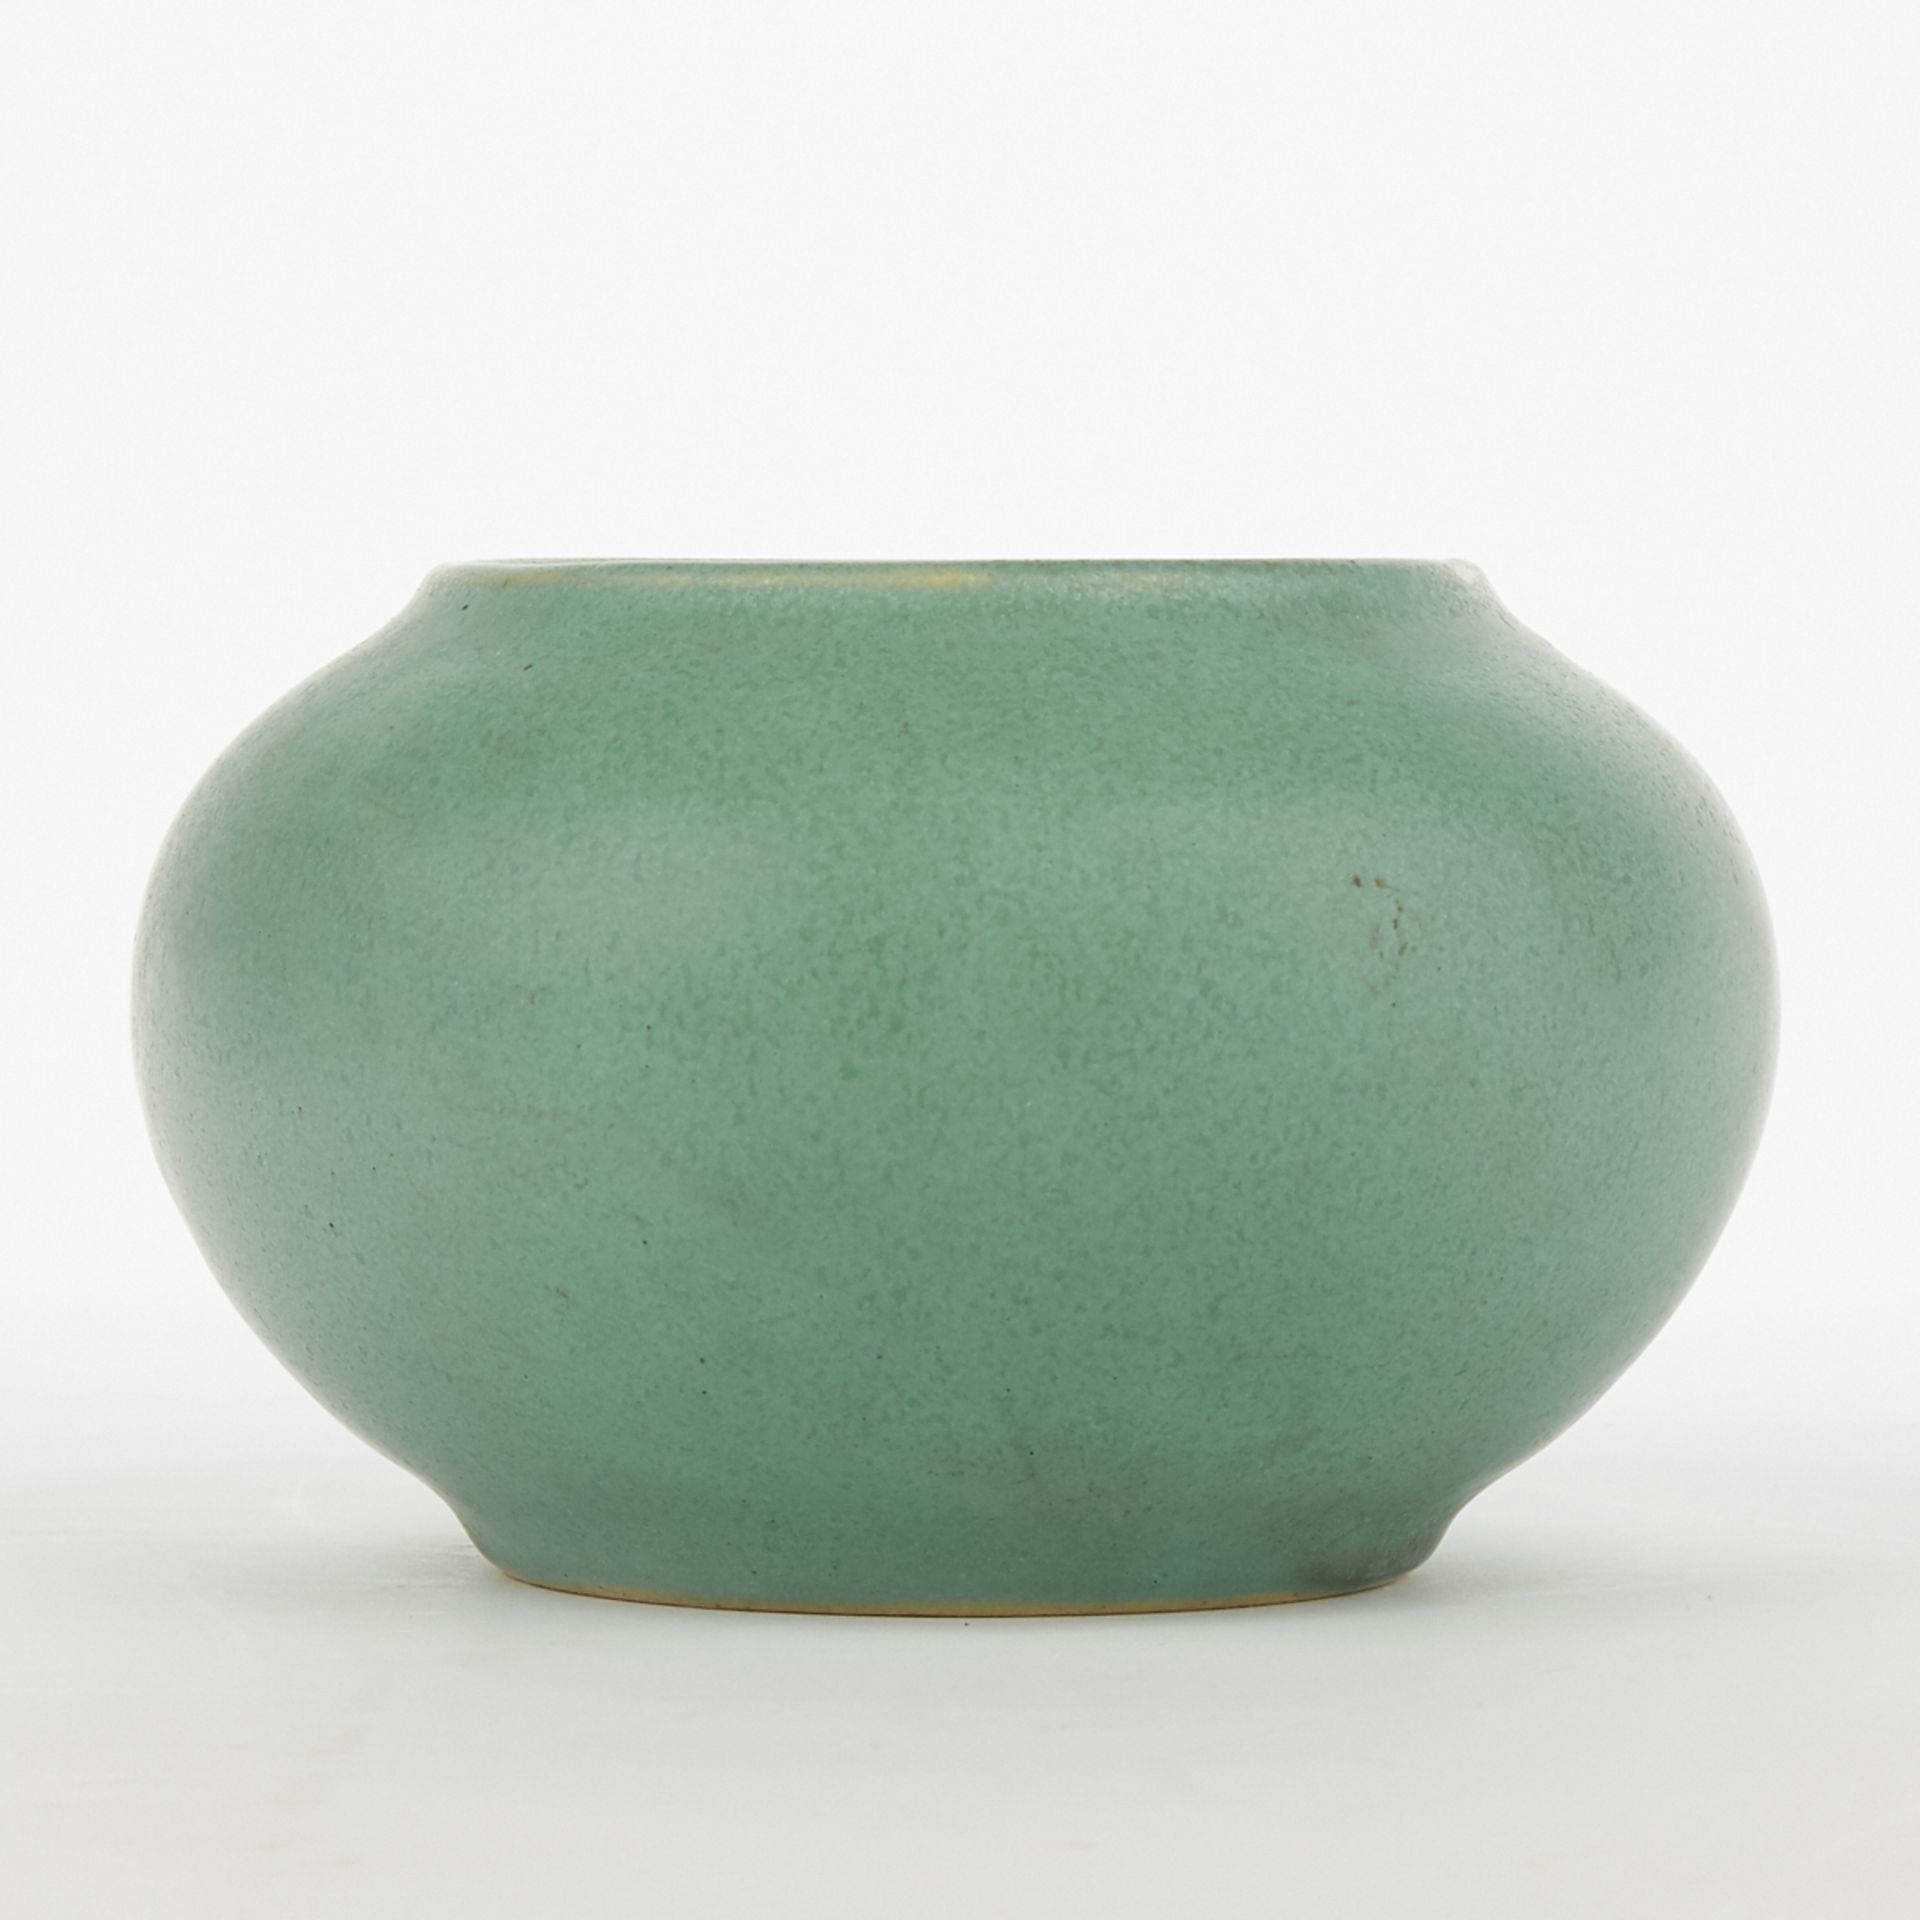 Denver White Pottery Matte Green Glazed Pot - Image 4 of 6